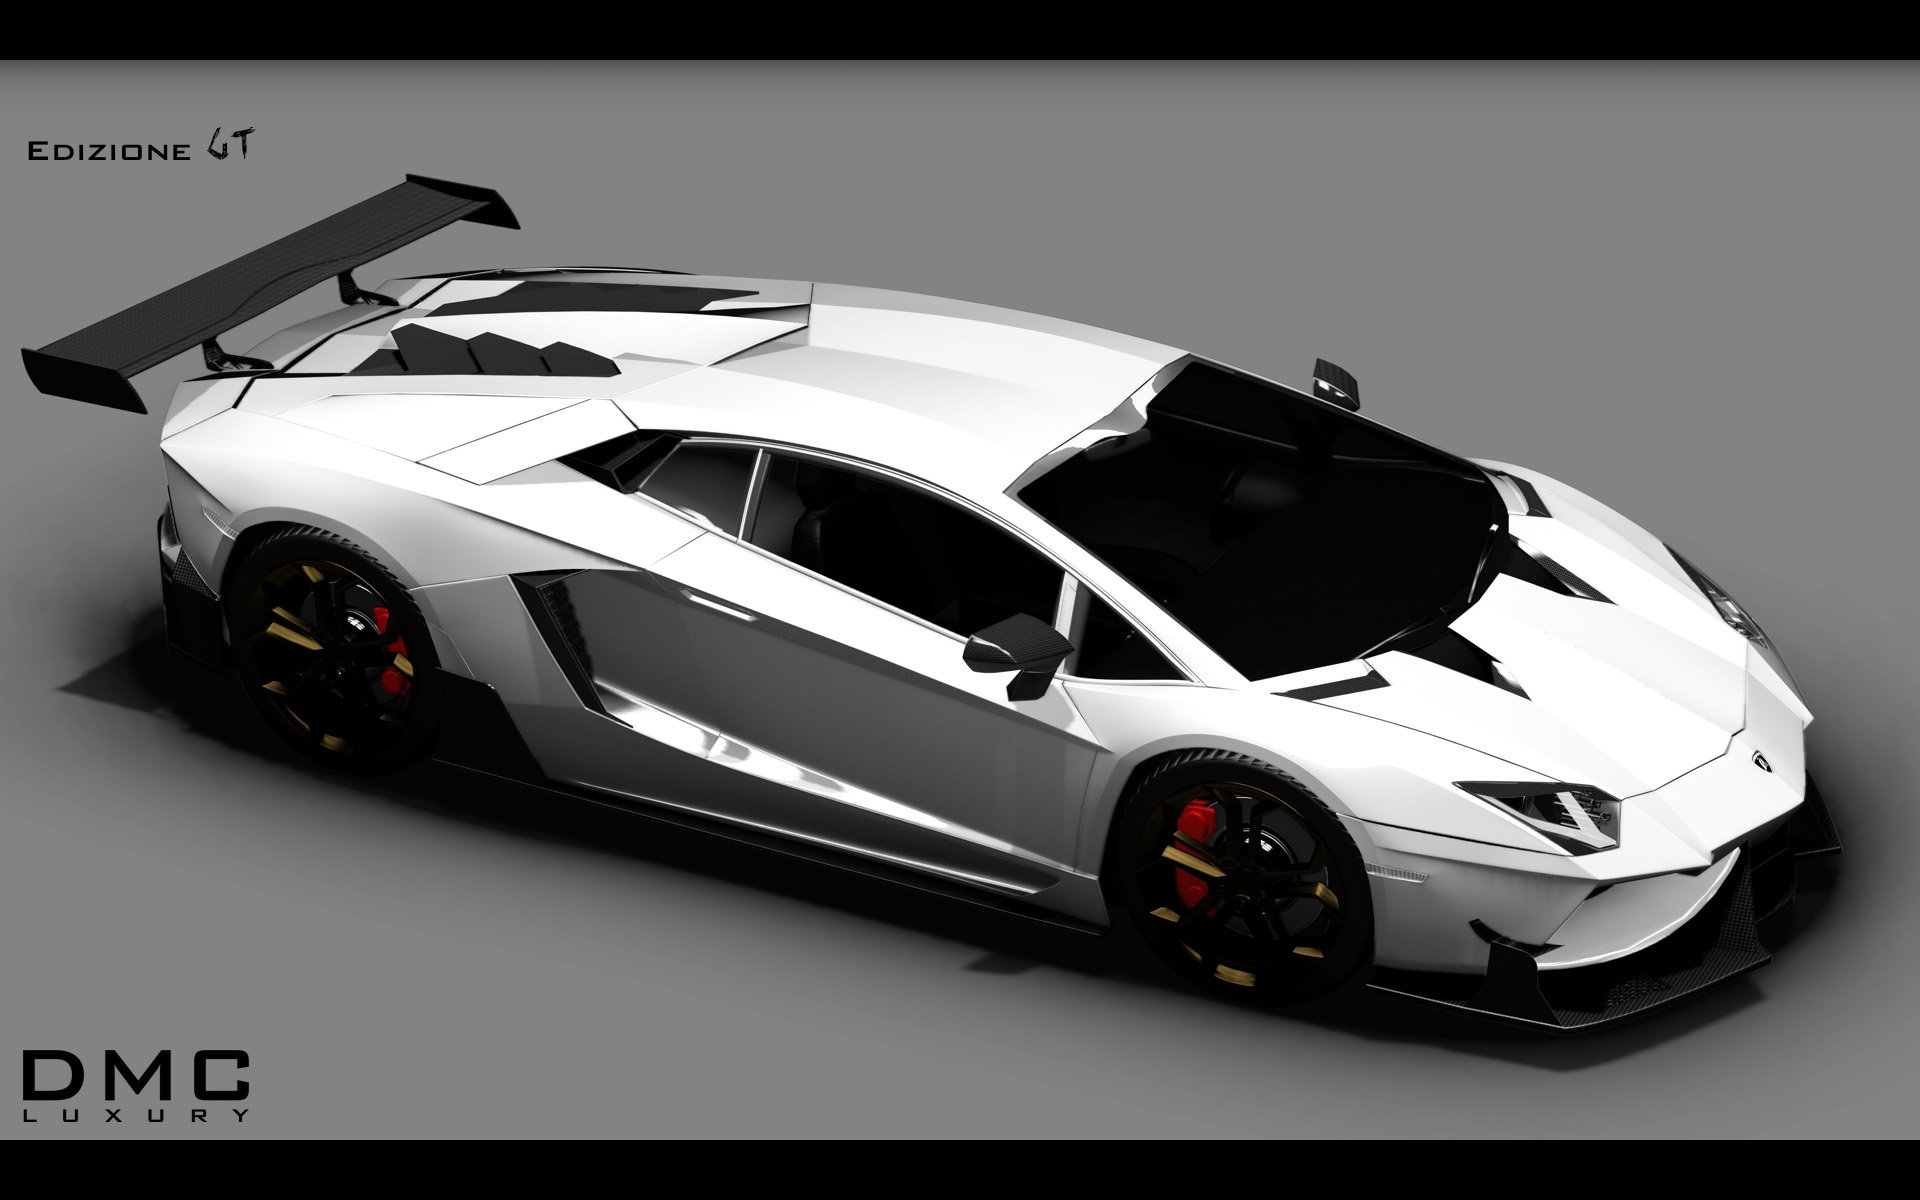 2014, Dmc, Lamborghini, Aventador, Lp988, Edizione, G t, Supercar Wallpaper